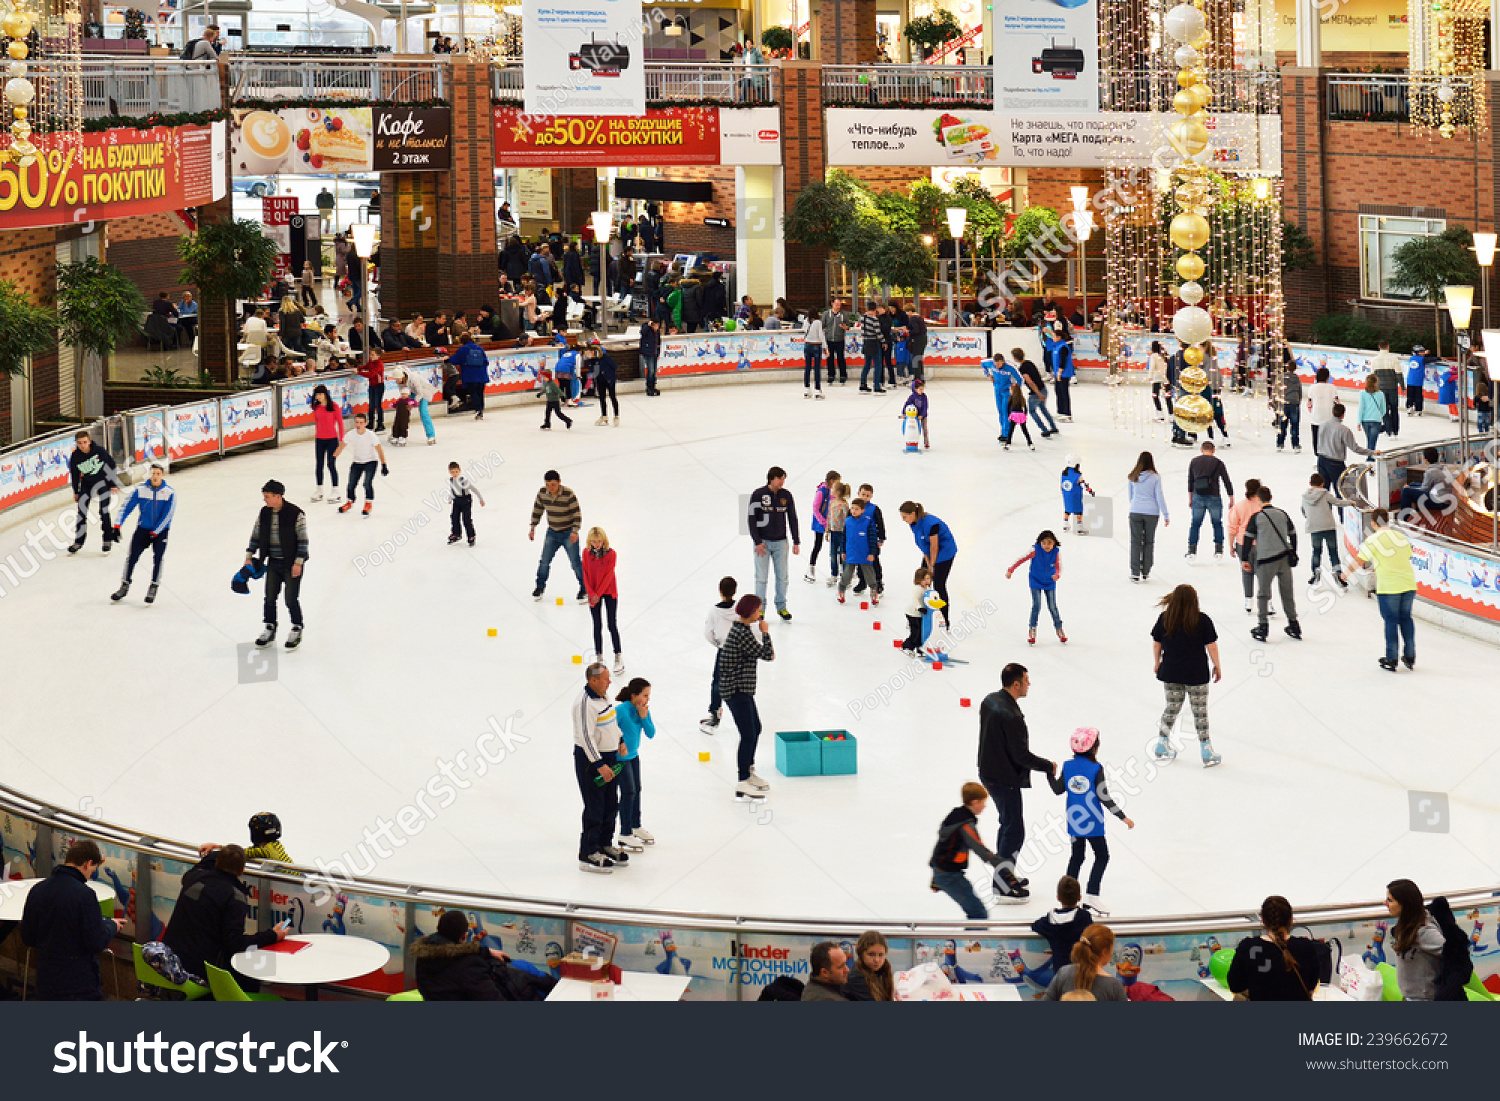 ice skate shopping